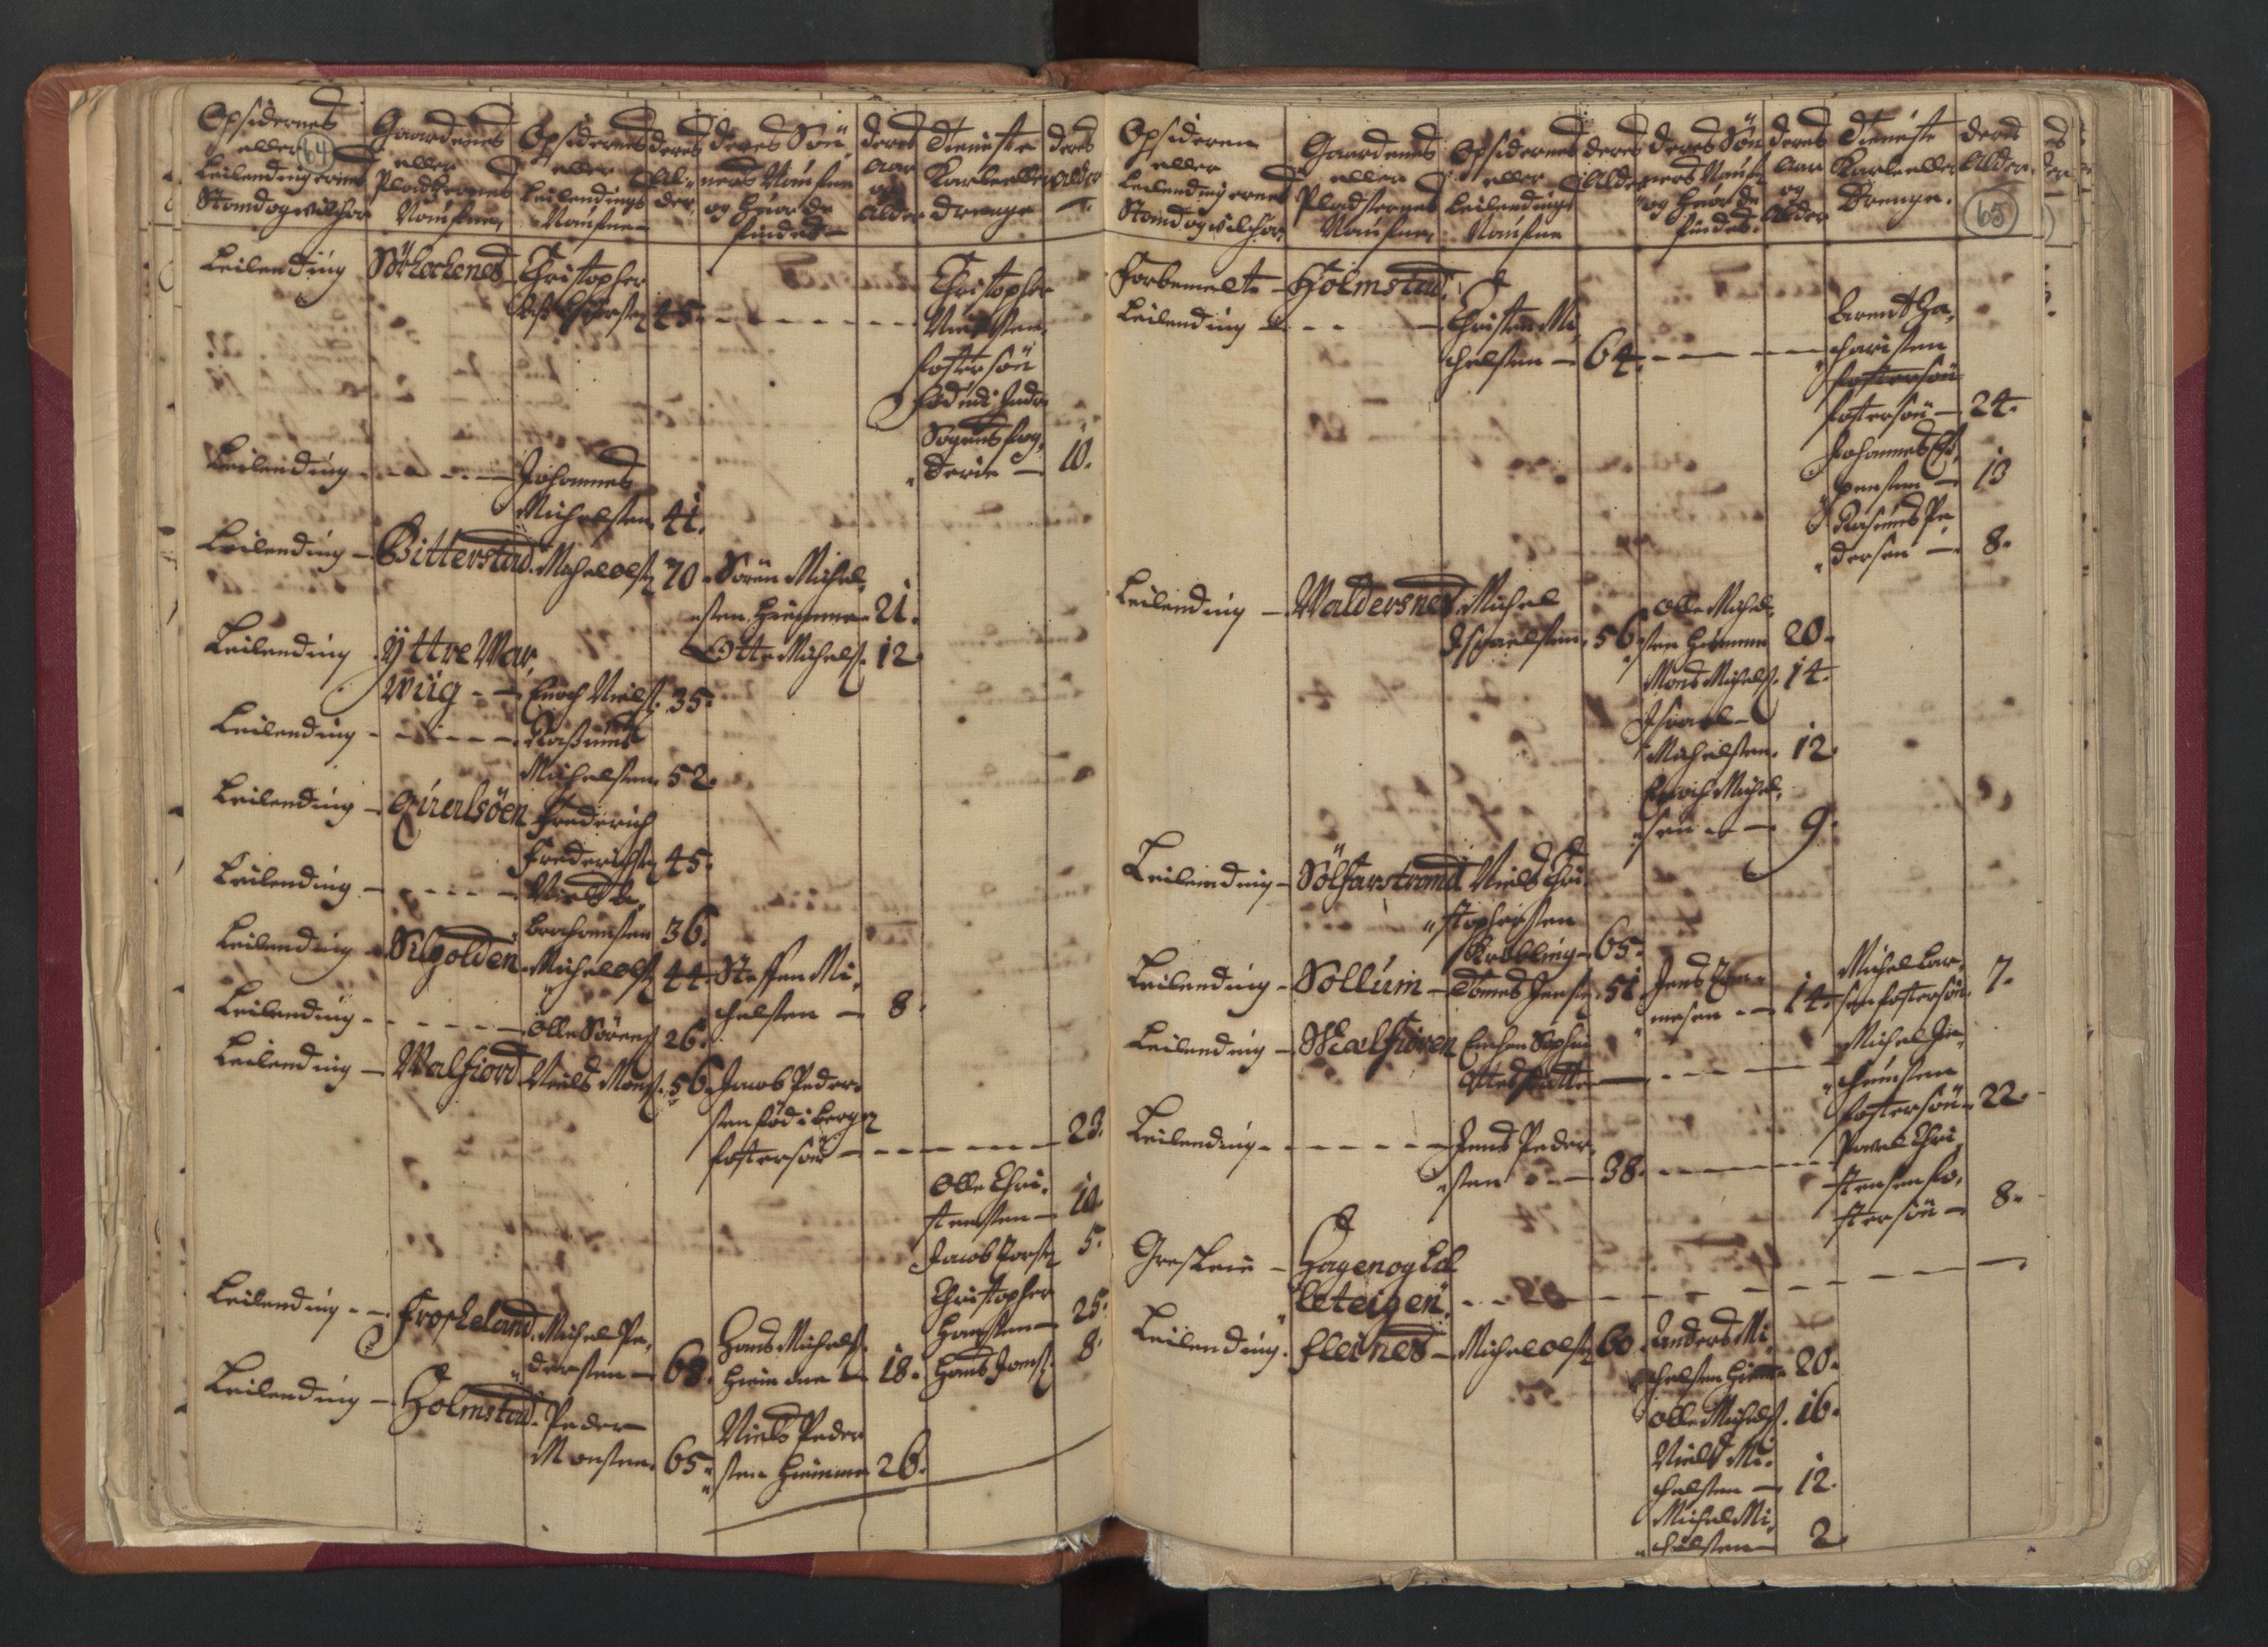 RA, Census (manntall) 1701, no. 18: Vesterålen, Andenes and Lofoten fogderi, 1701, p. 64-65